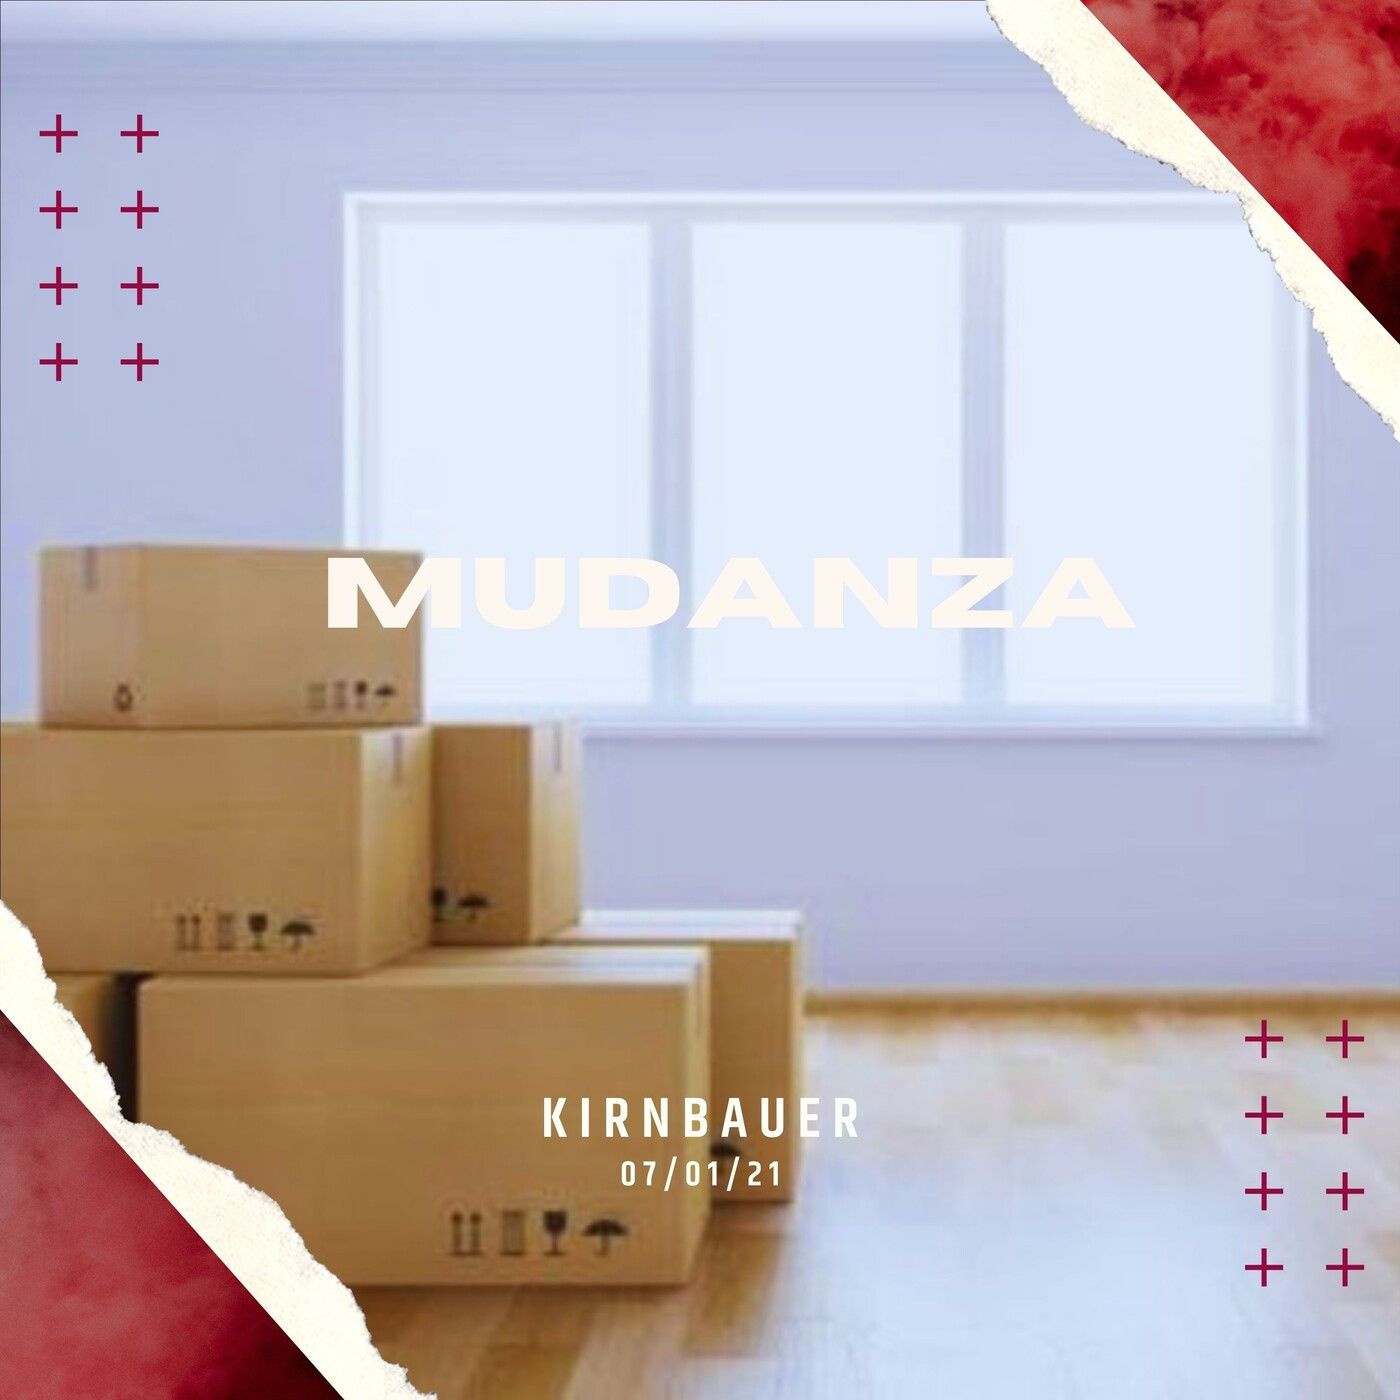 Mudanza feat. Kirnbauer